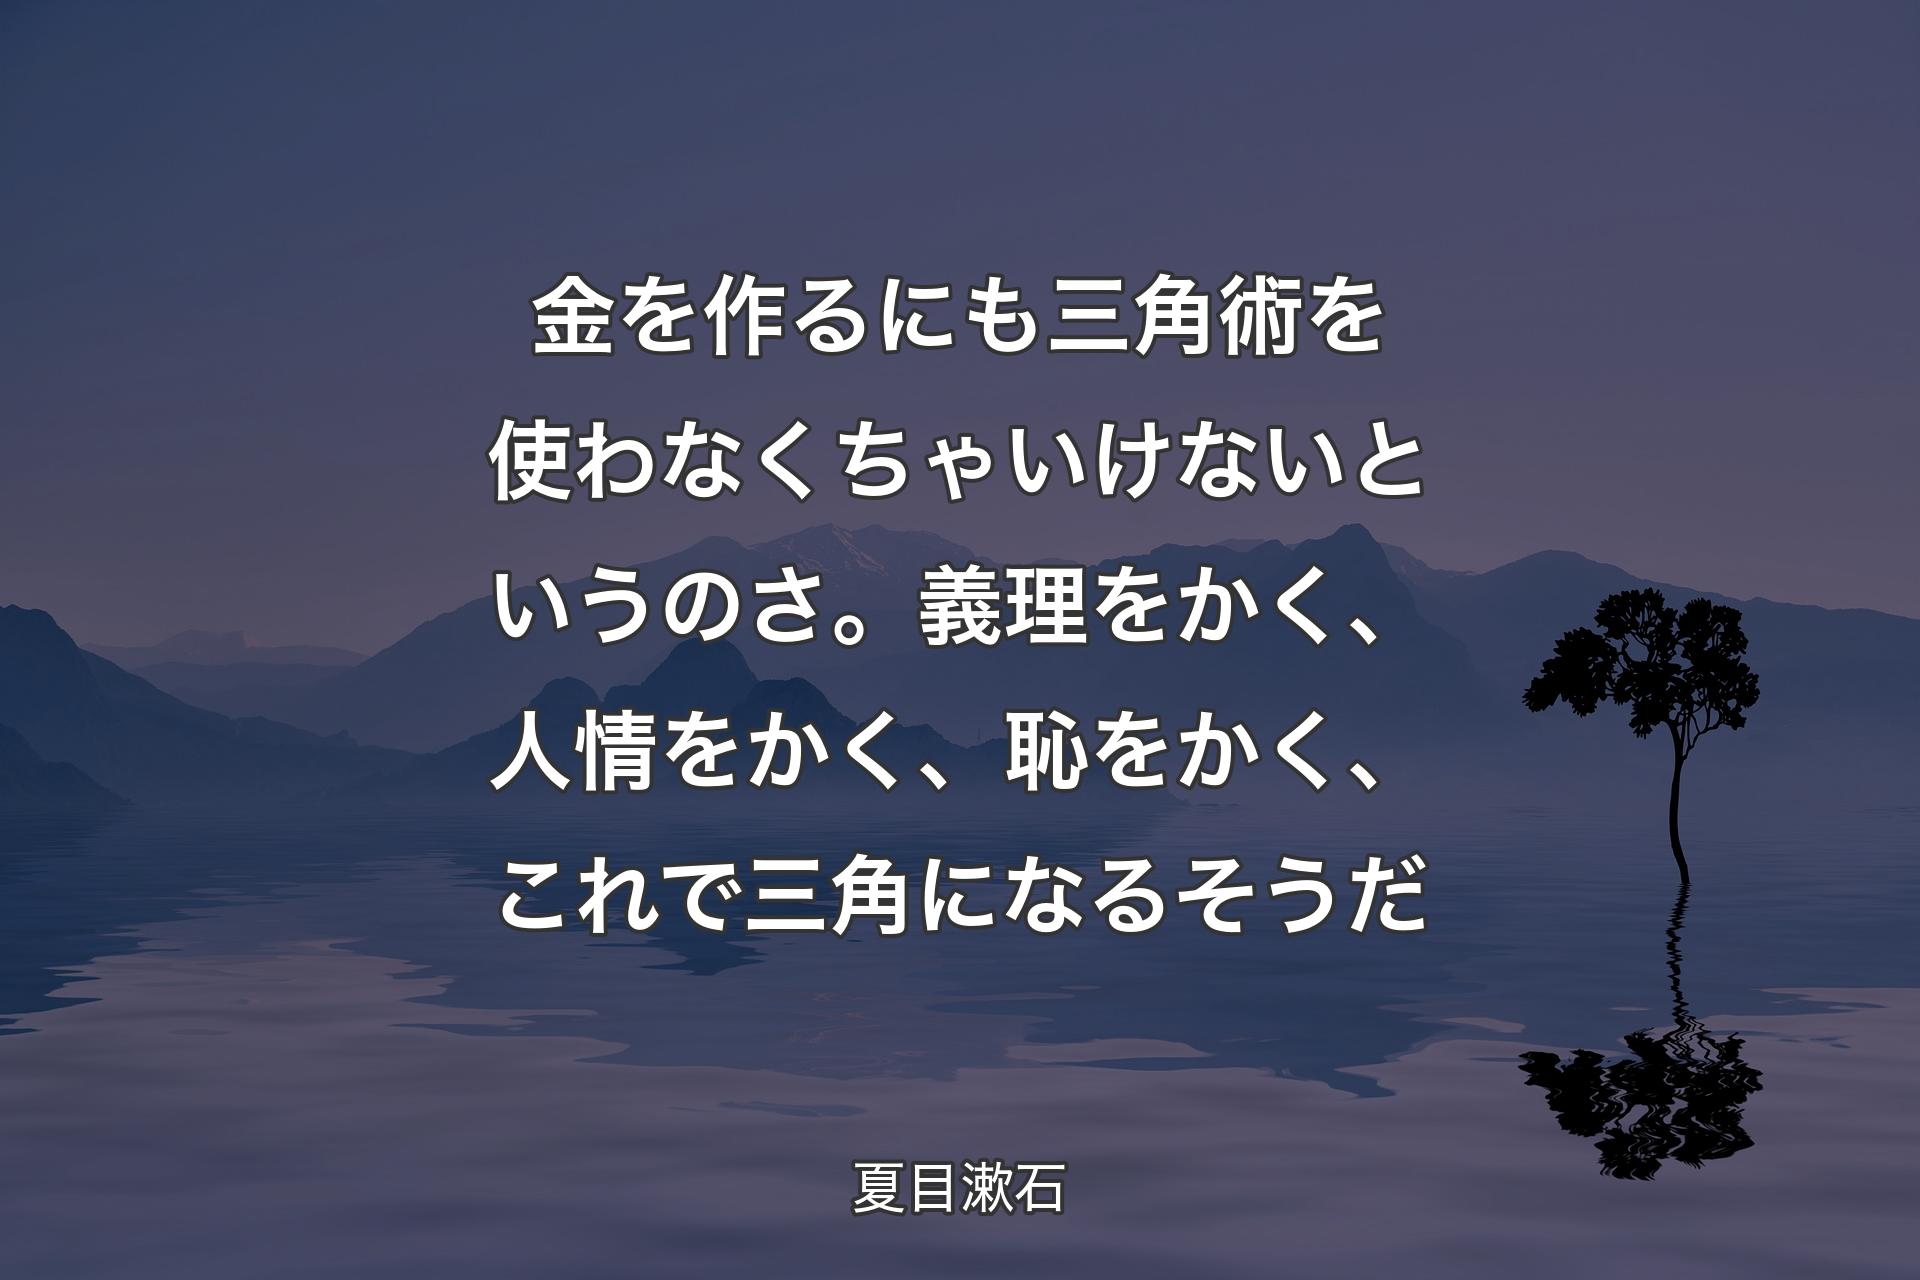 金を�作るにも三角術を使わなくちゃいけないというのさ。義理をかく、人情をかく、恥をかく、これで三角になるそうだ - 夏目漱石